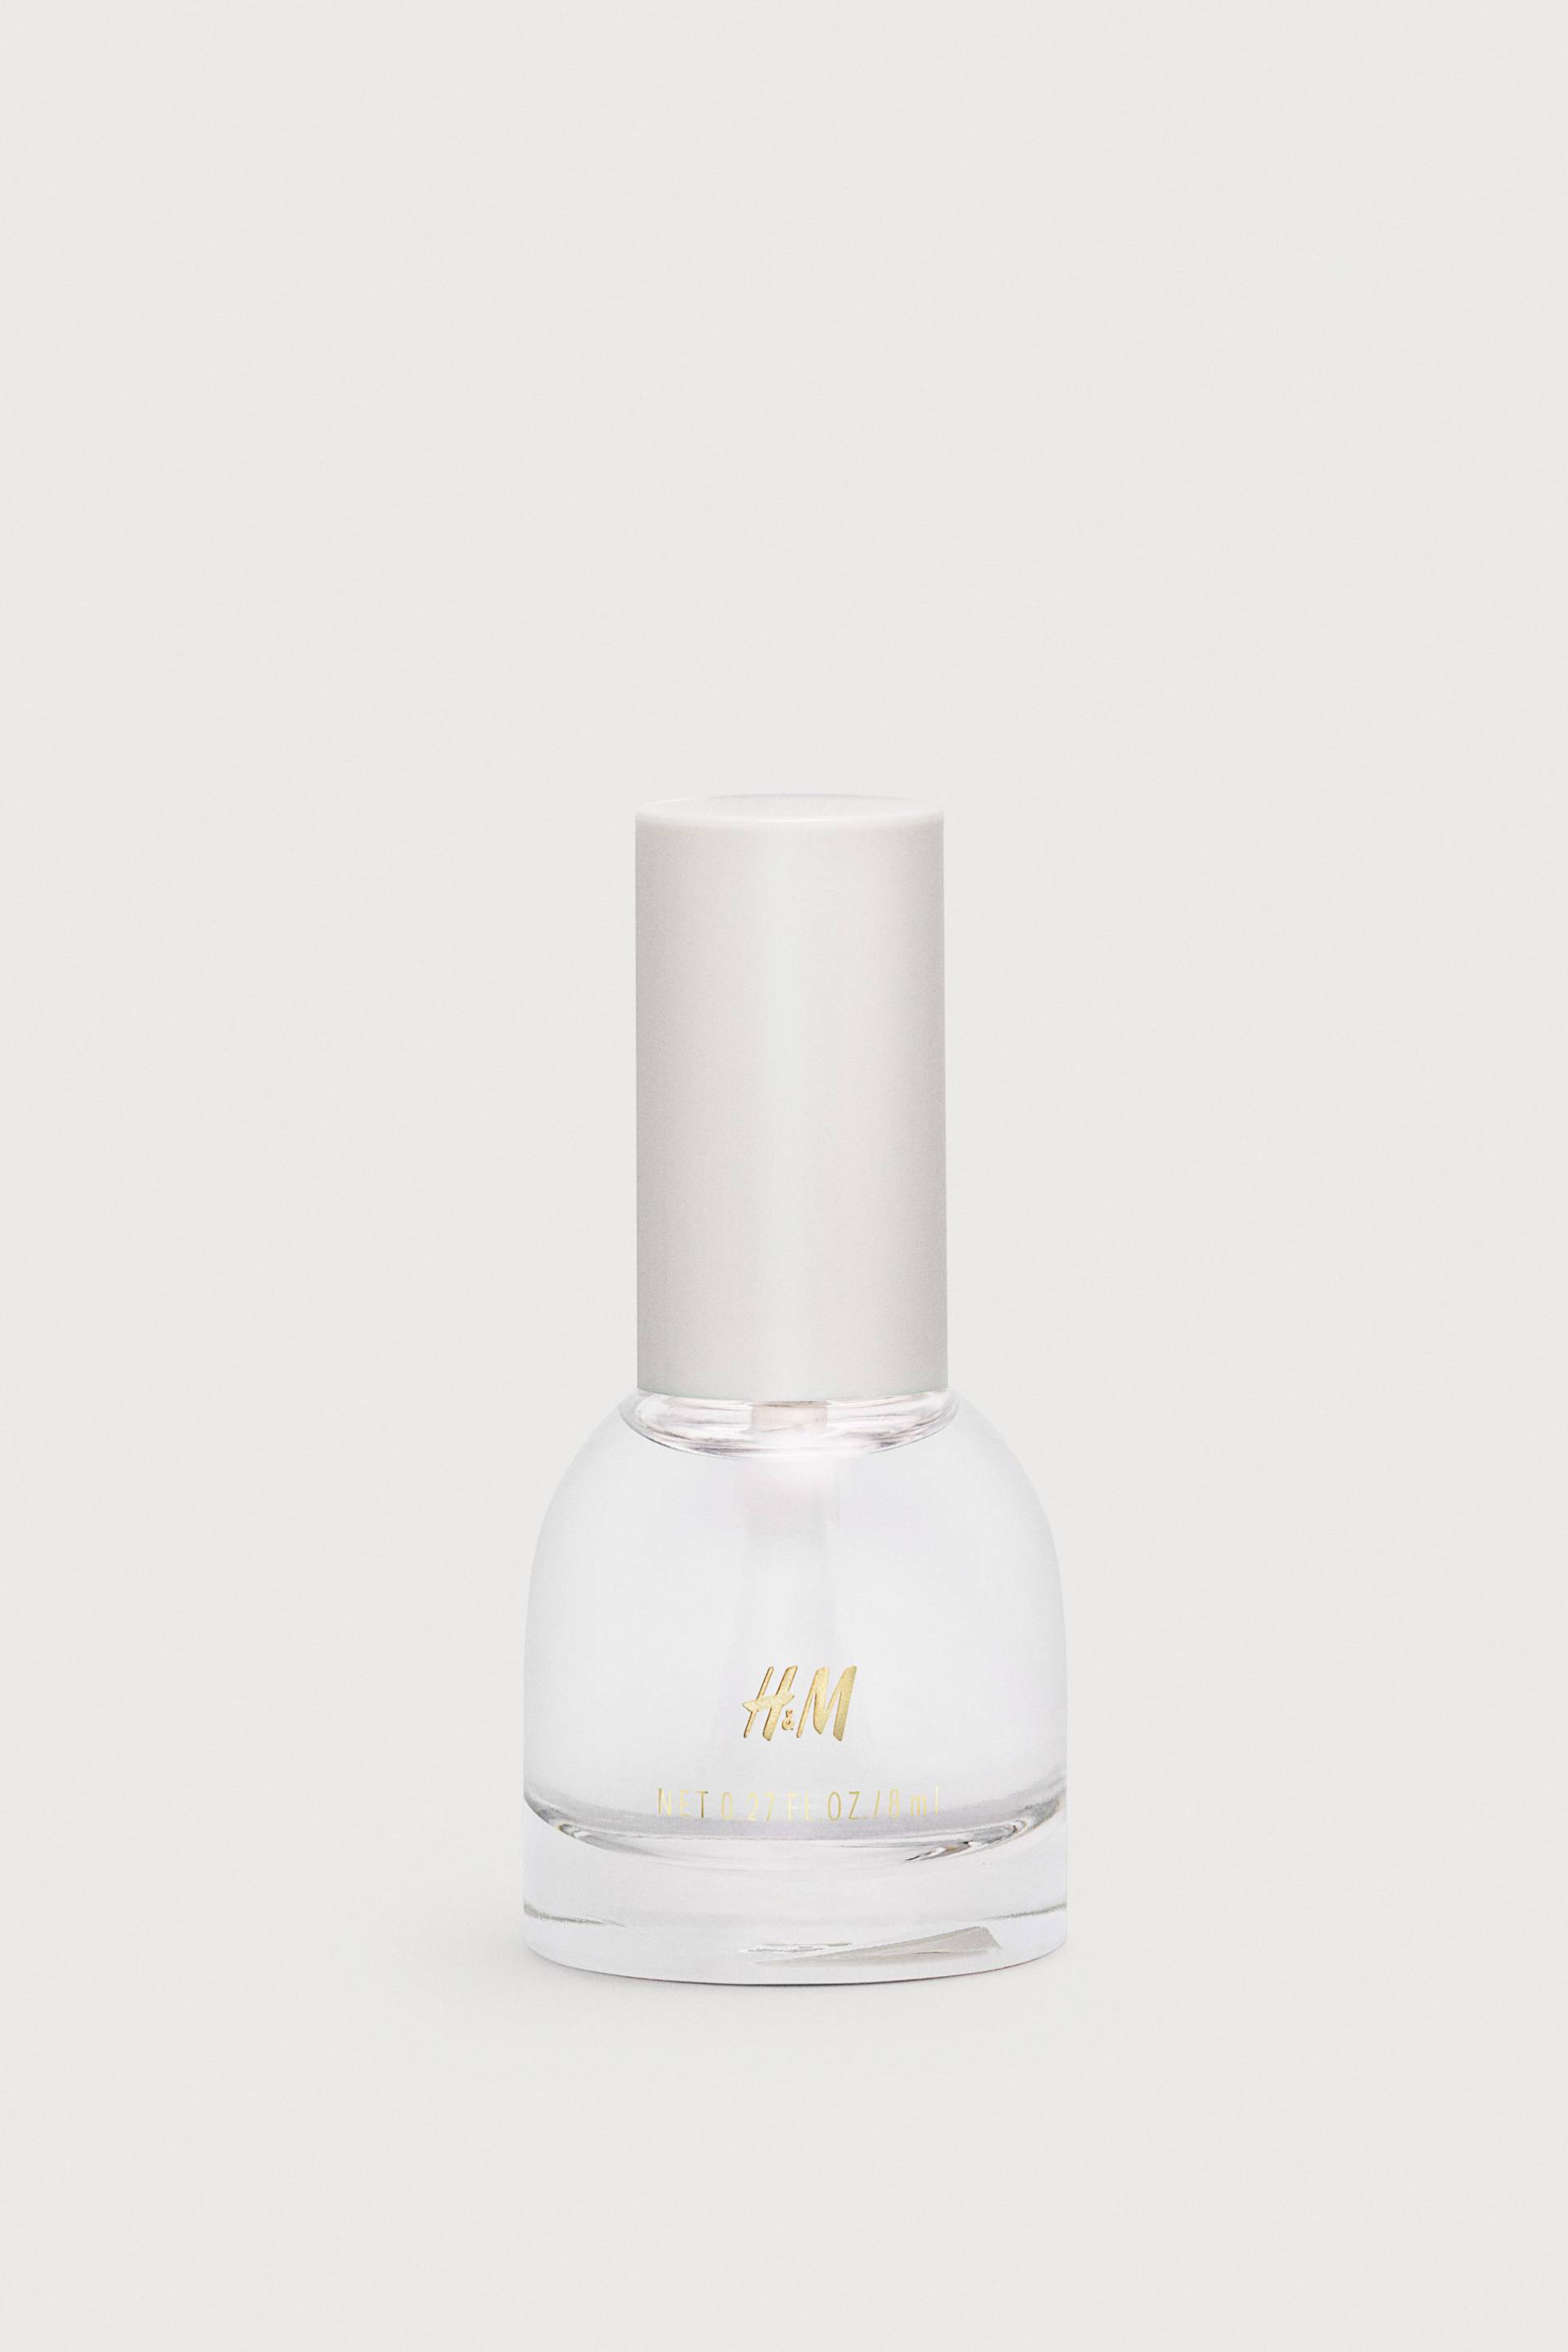 H&M Überlack mit Gel-Effekt Clear, Nagellack von H&M